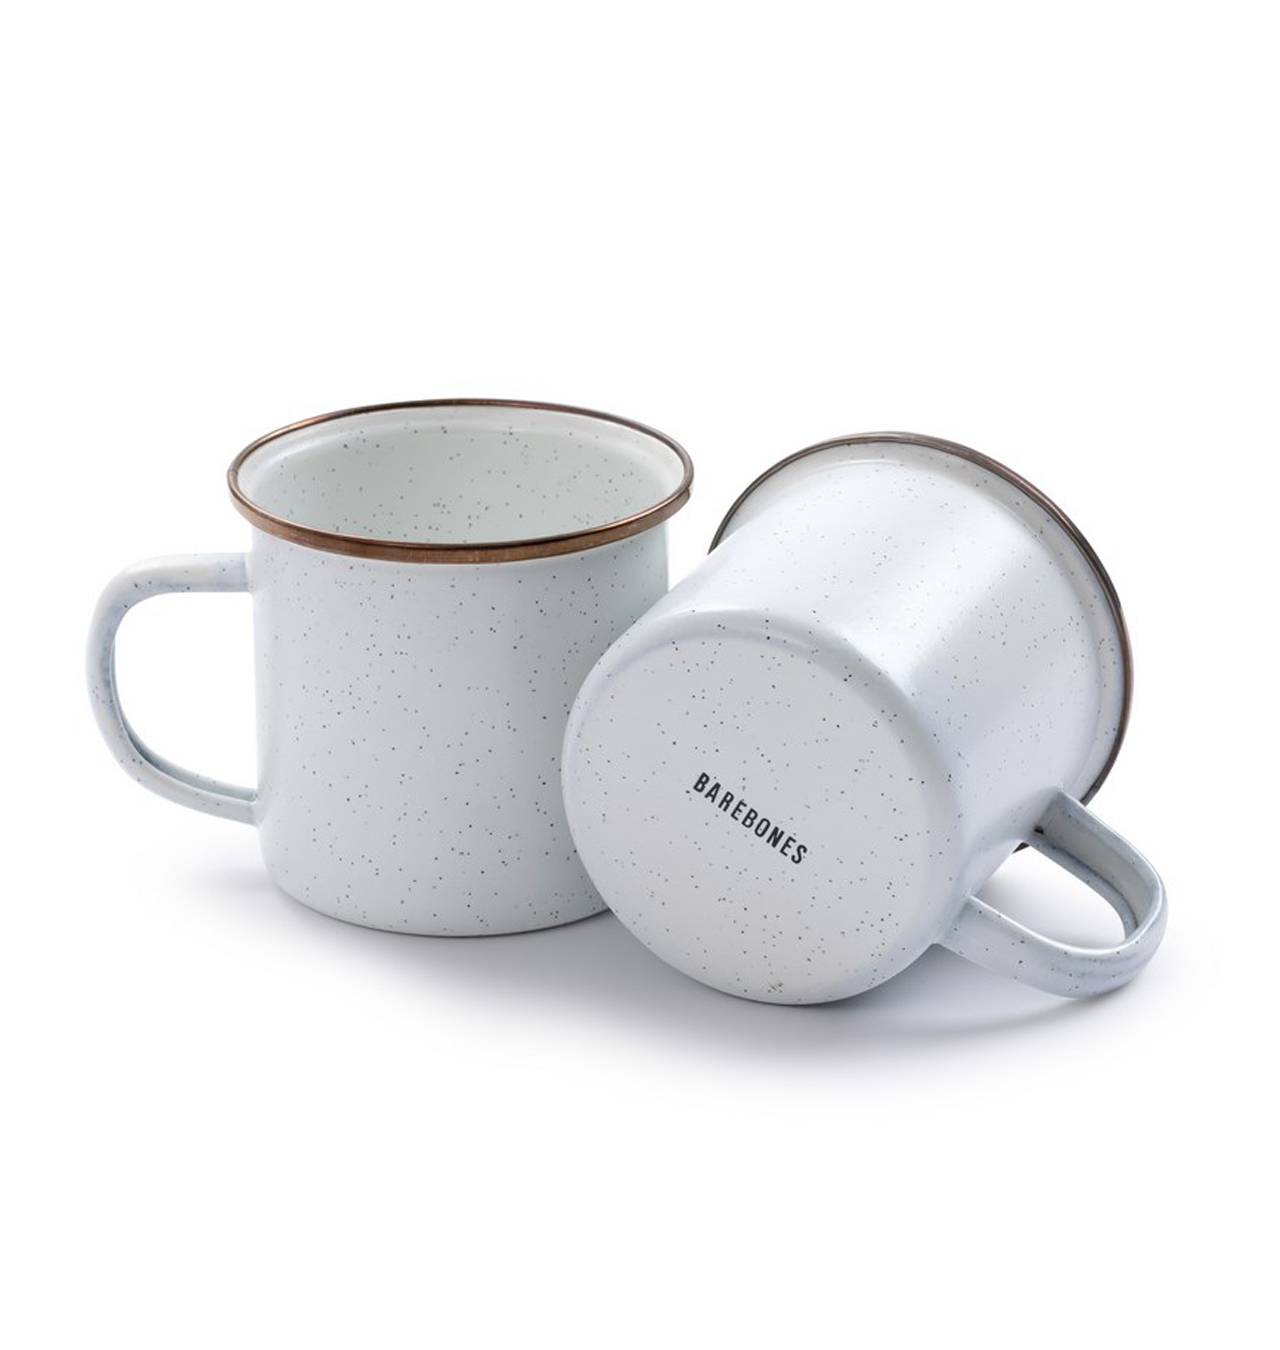 Barebones---Enamel-Coffee-Mugs-(Set-of-2)---Eggshell1